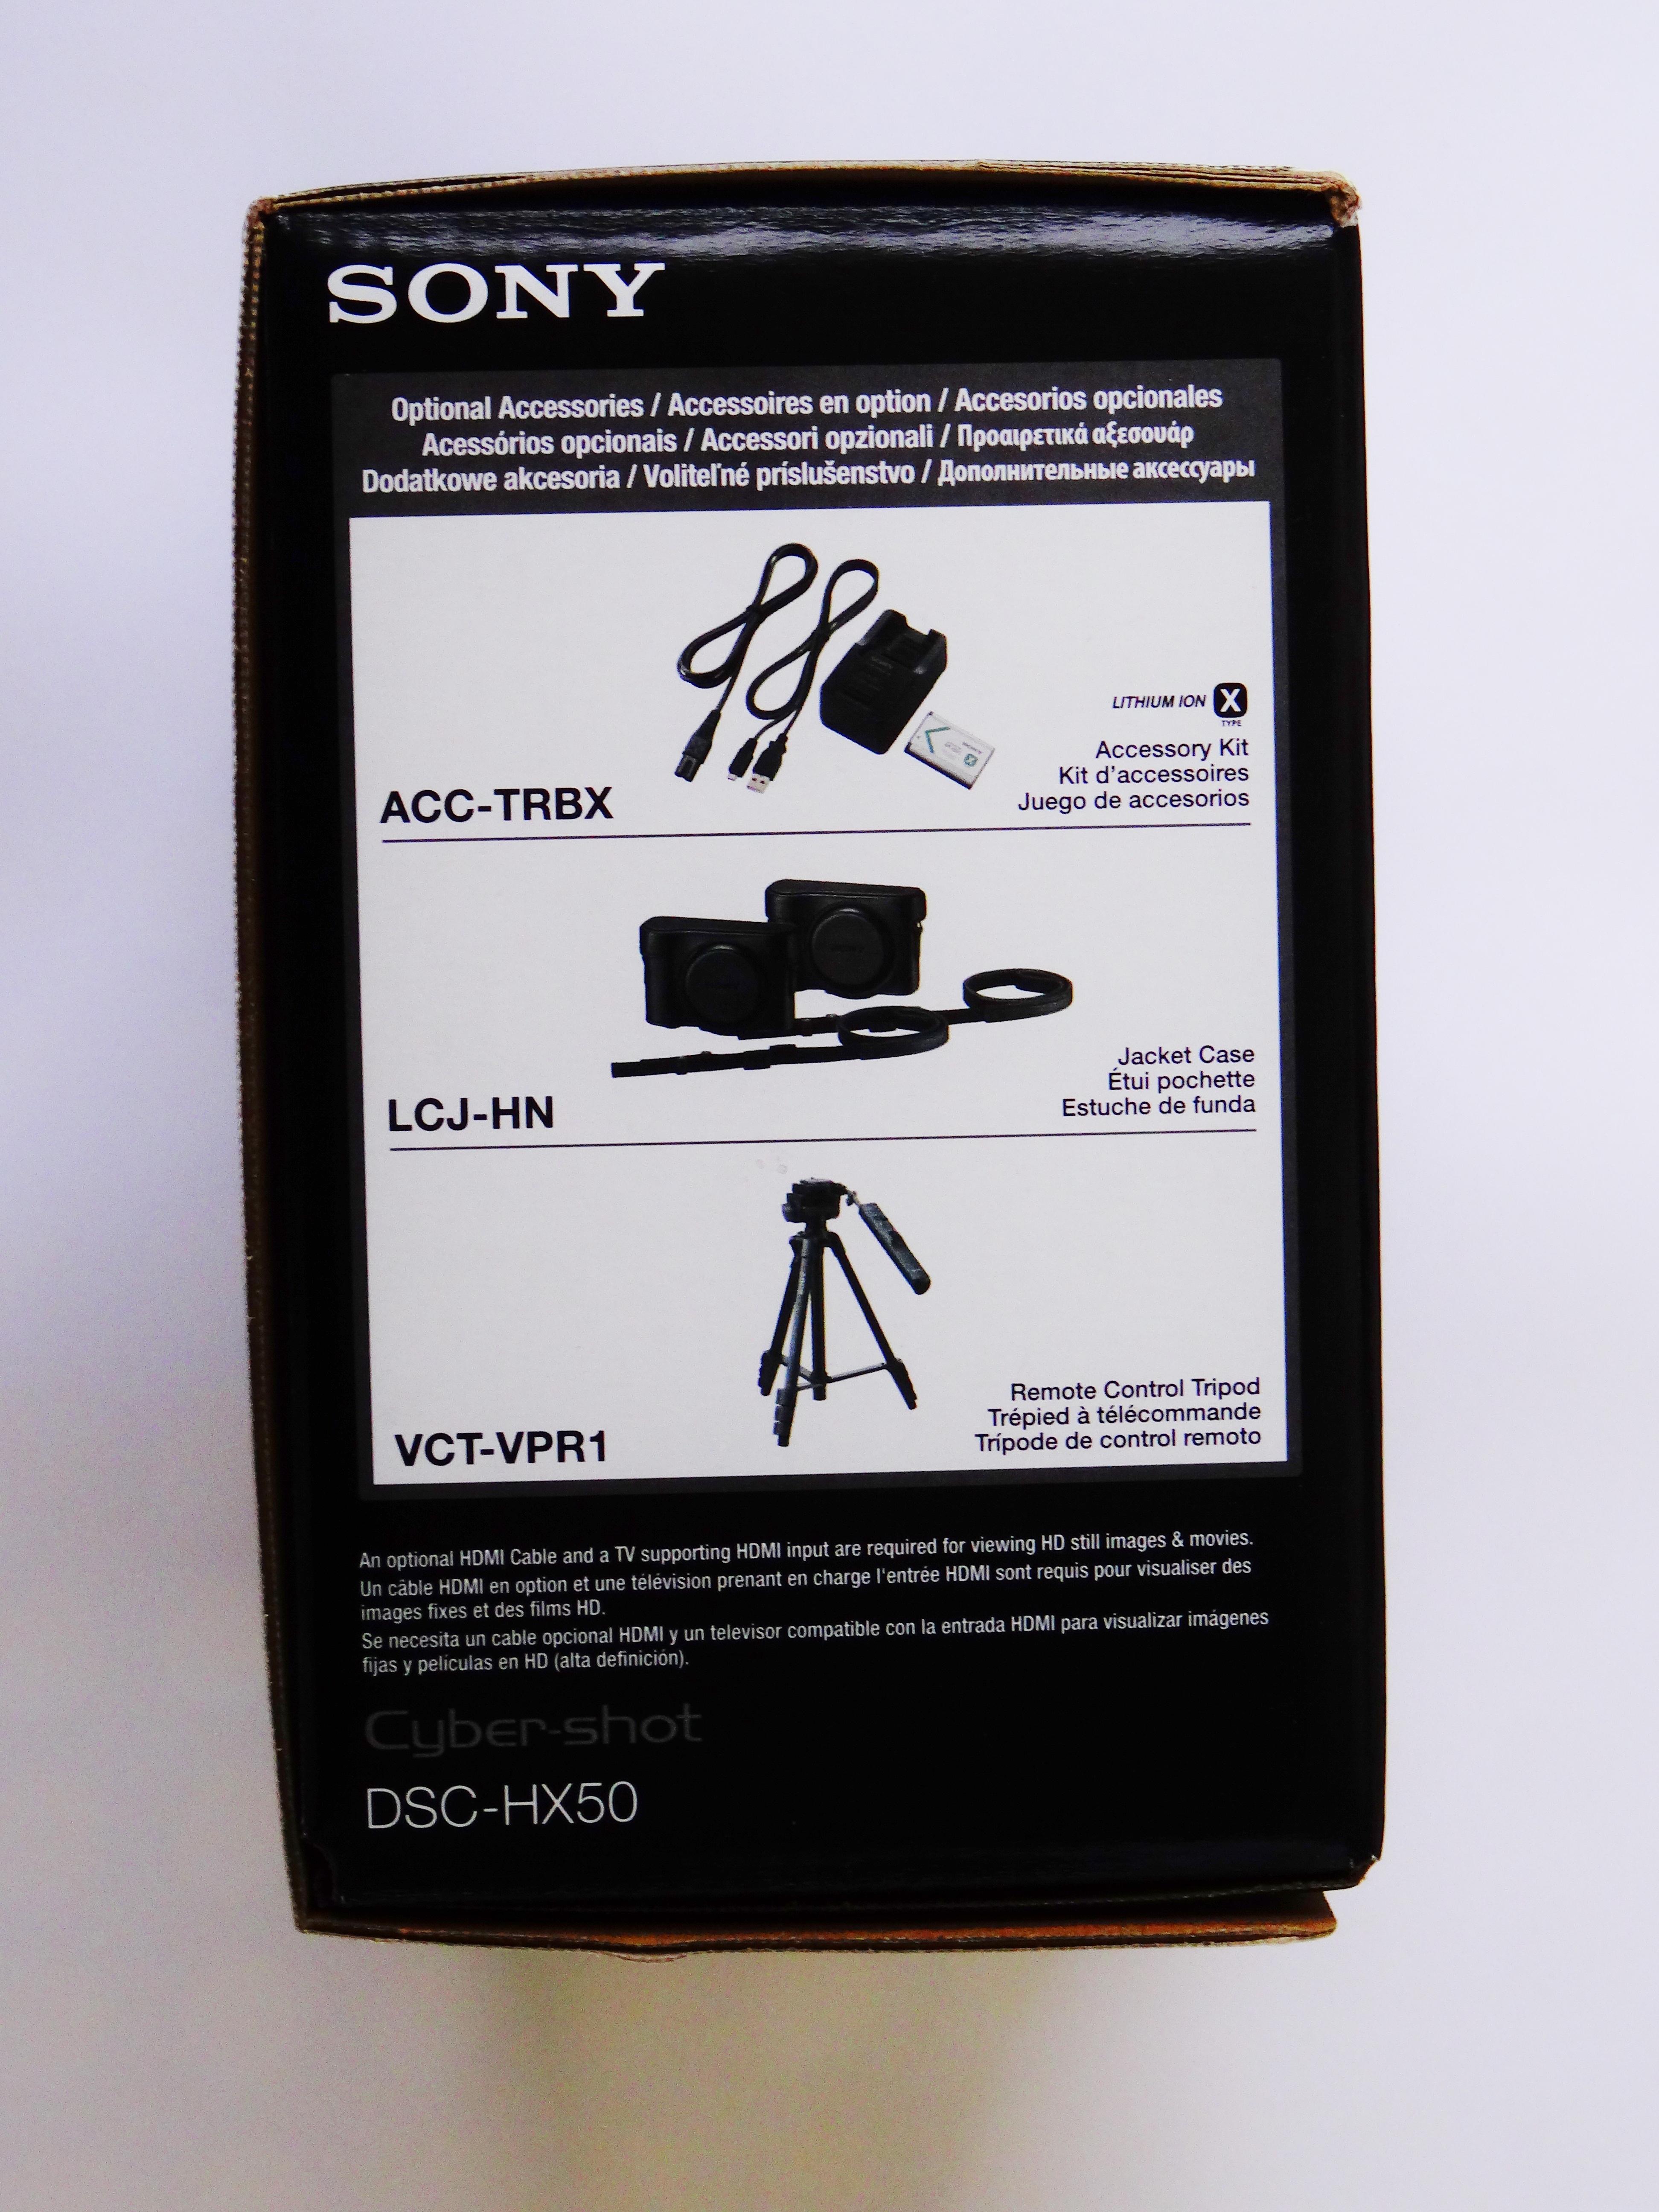 Jeg tror, ​​jeg er syg Tilgivende pessimistisk File:Sony DSC Cyber - shot HX 50 package 1.JPG - Wikimedia Commons